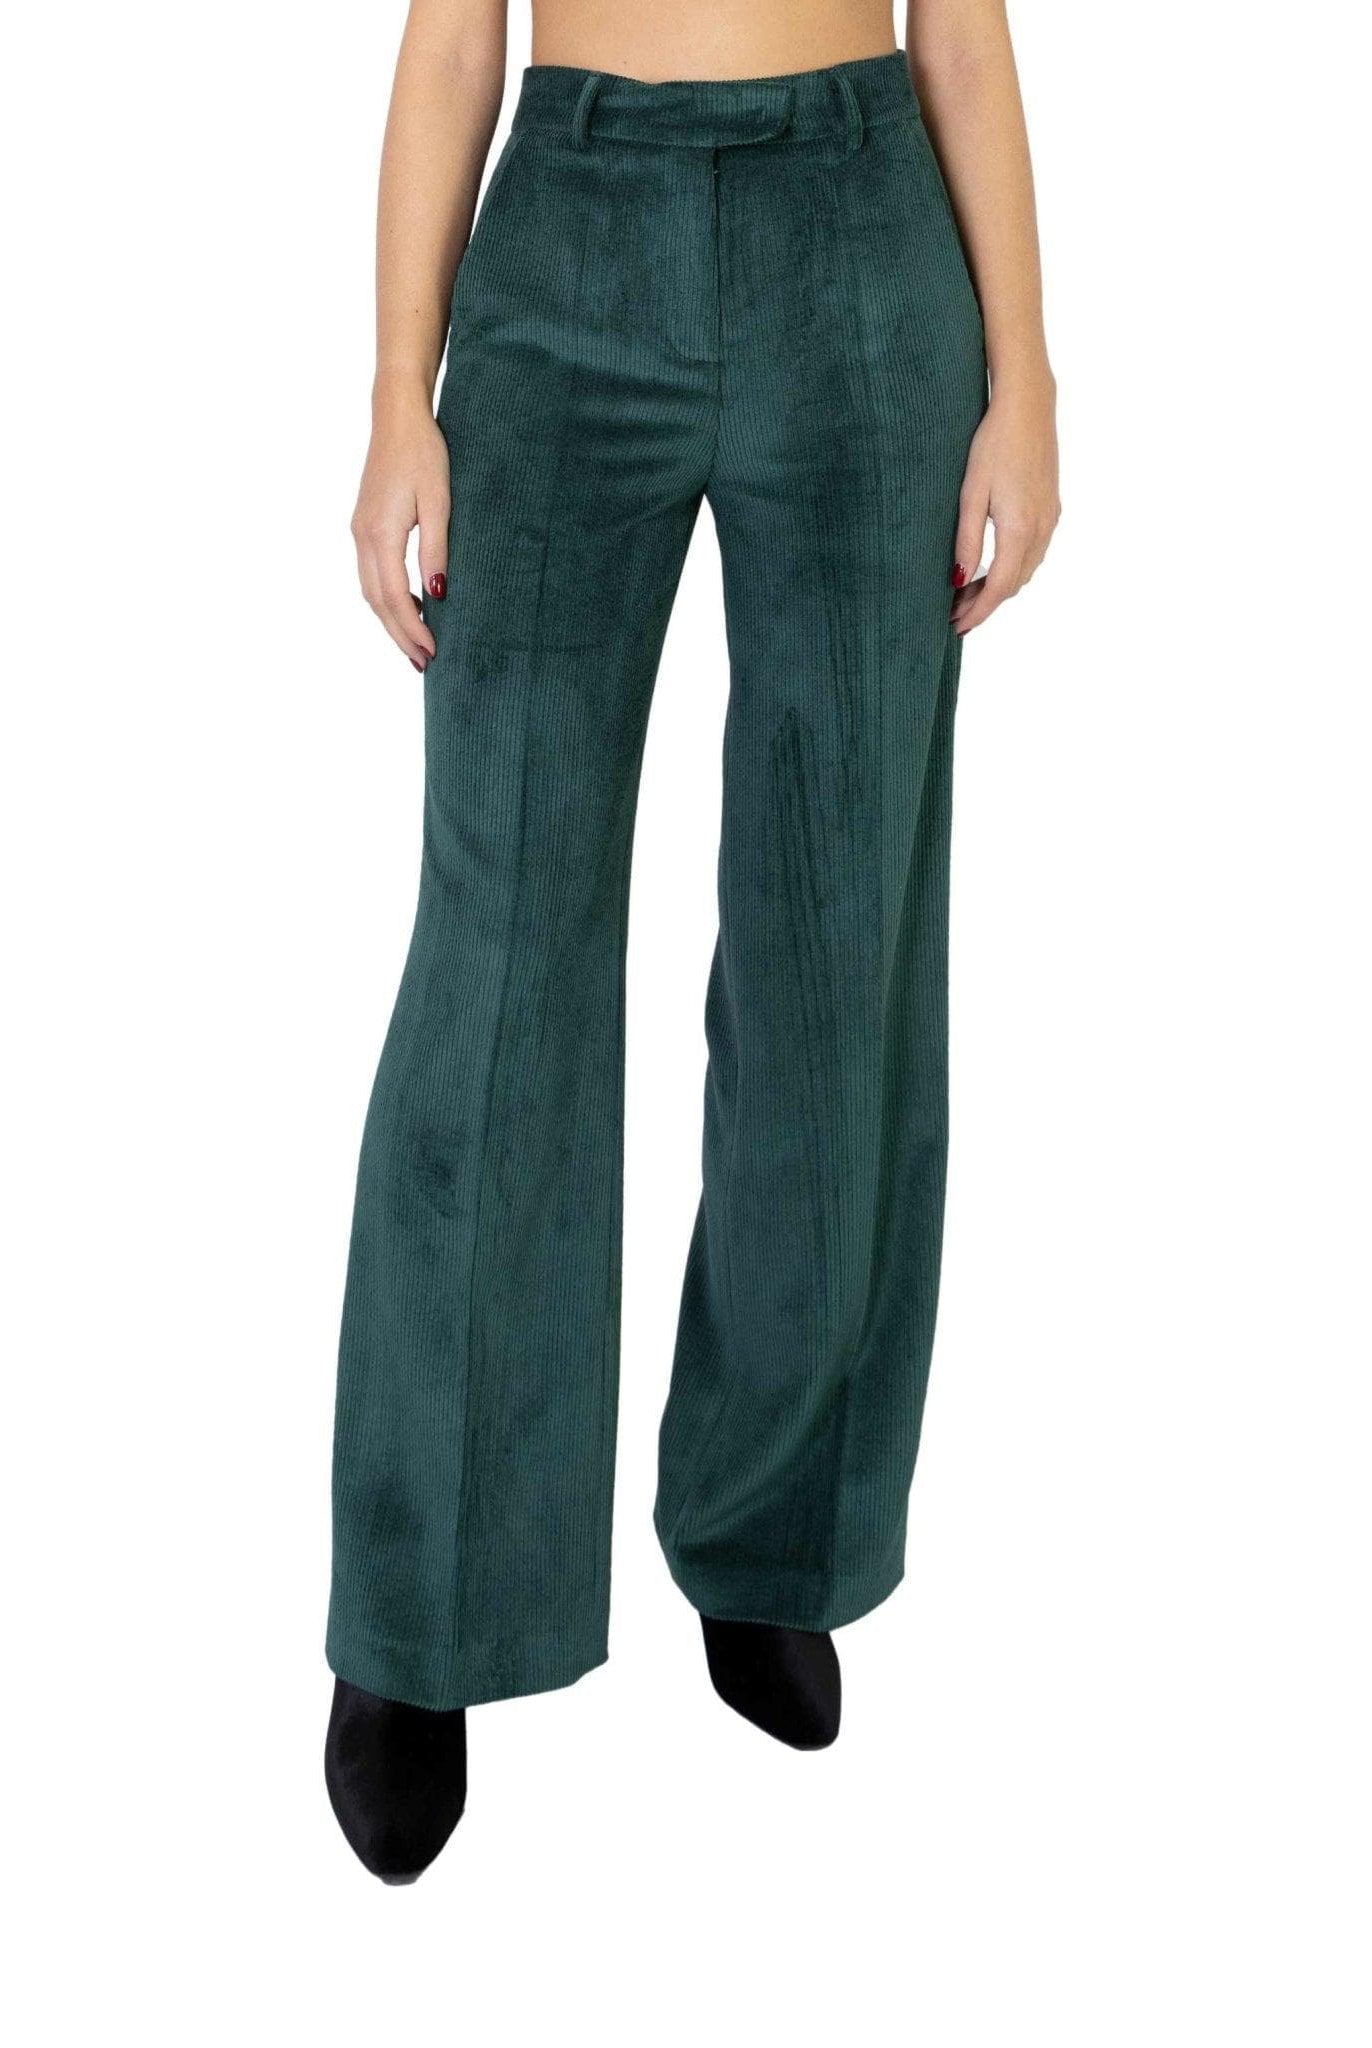 Pantalone in velluto verde a coste- Alice Miller -Giorgioquinto